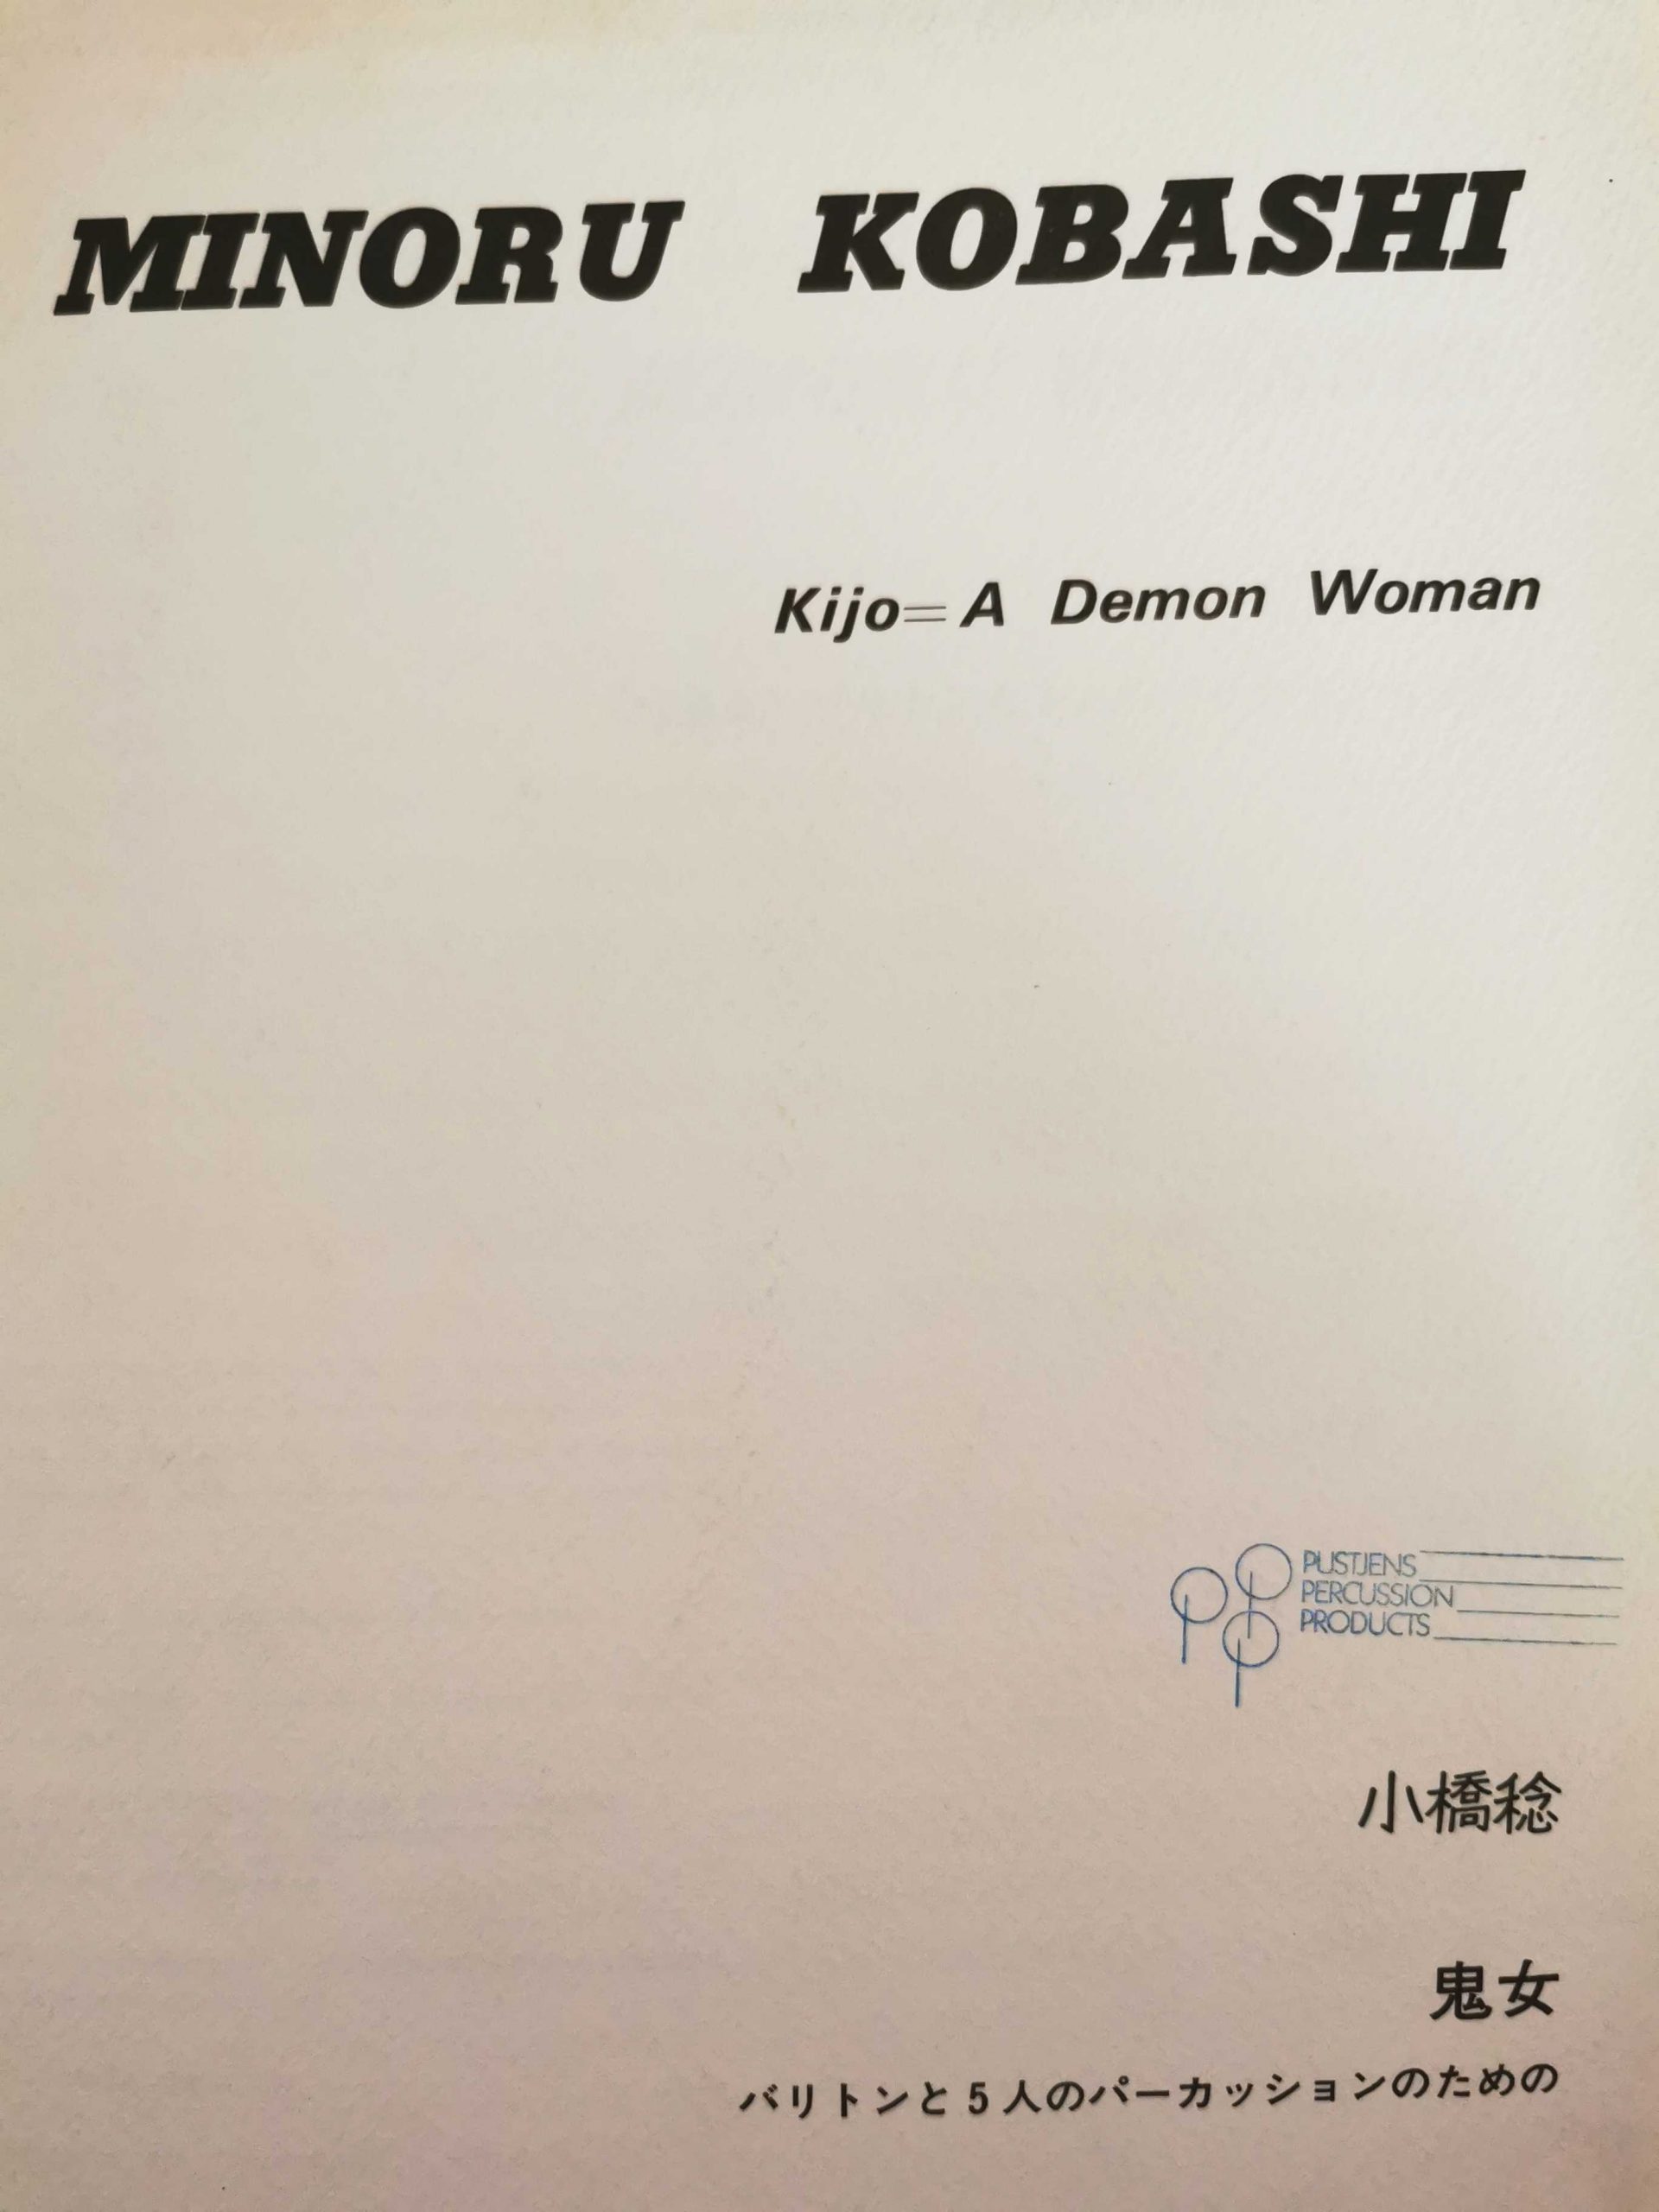 Kijo A Demon Woman by Minoru Kobashi